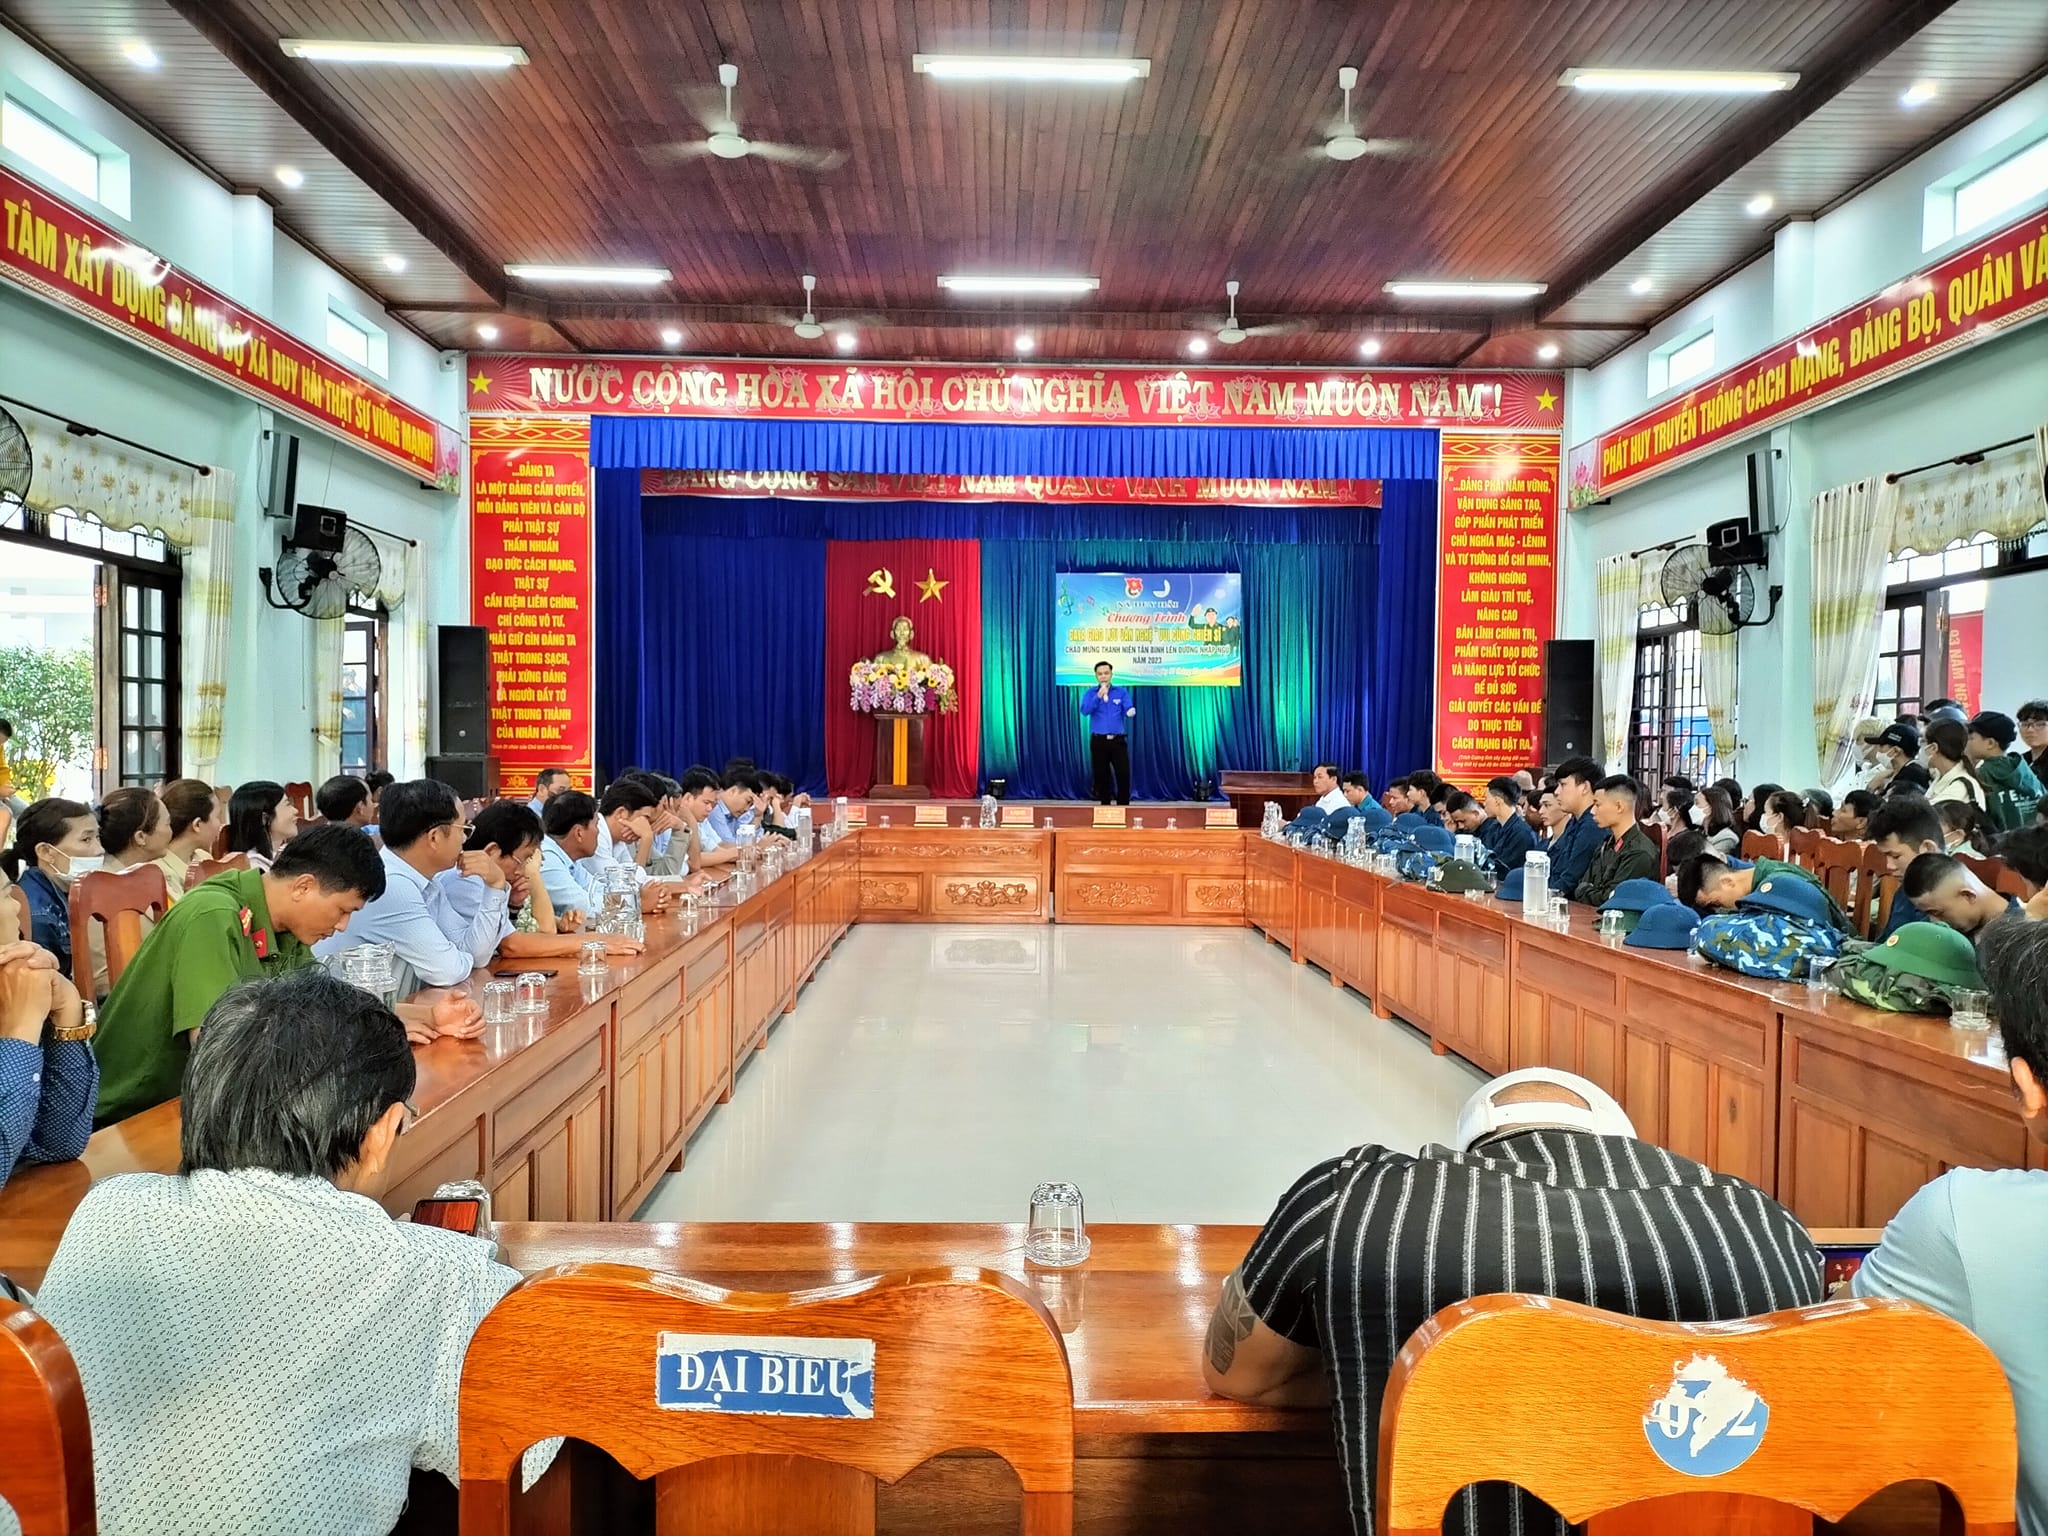 Tuổi trẻ Duy Hải tổ chức nhiều hoạt động chào Xuân Quý Mão và kỷ niệm 93 năm Ngày thành lập Đảng Cộng Sản Việt Nam (03/02/1930-03/02/2023)